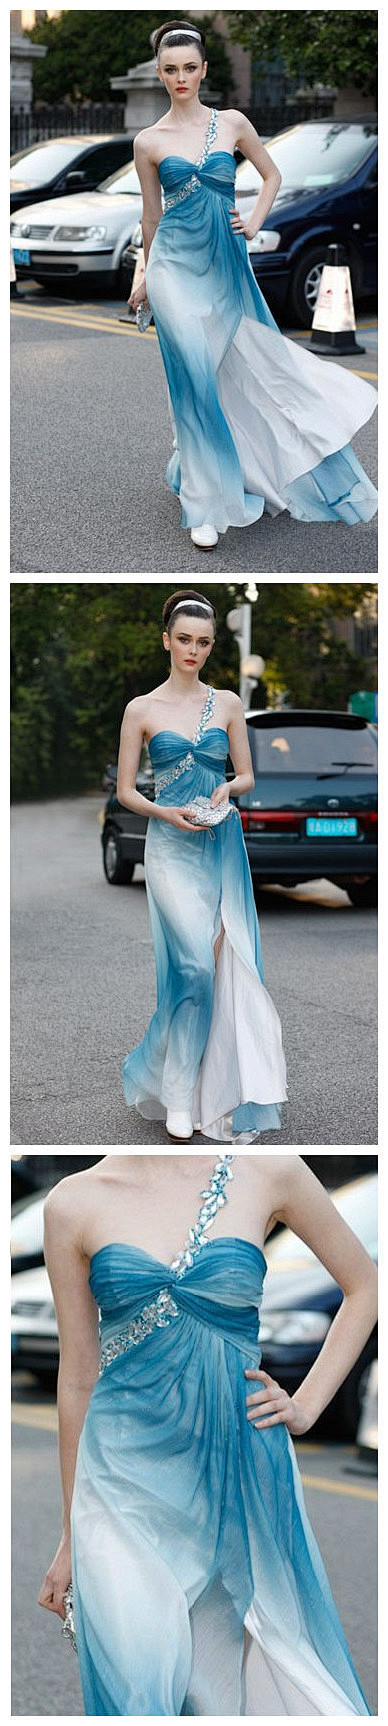 如大海般的湛蓝色新娘礼服加上鱼尾的裙摆设...